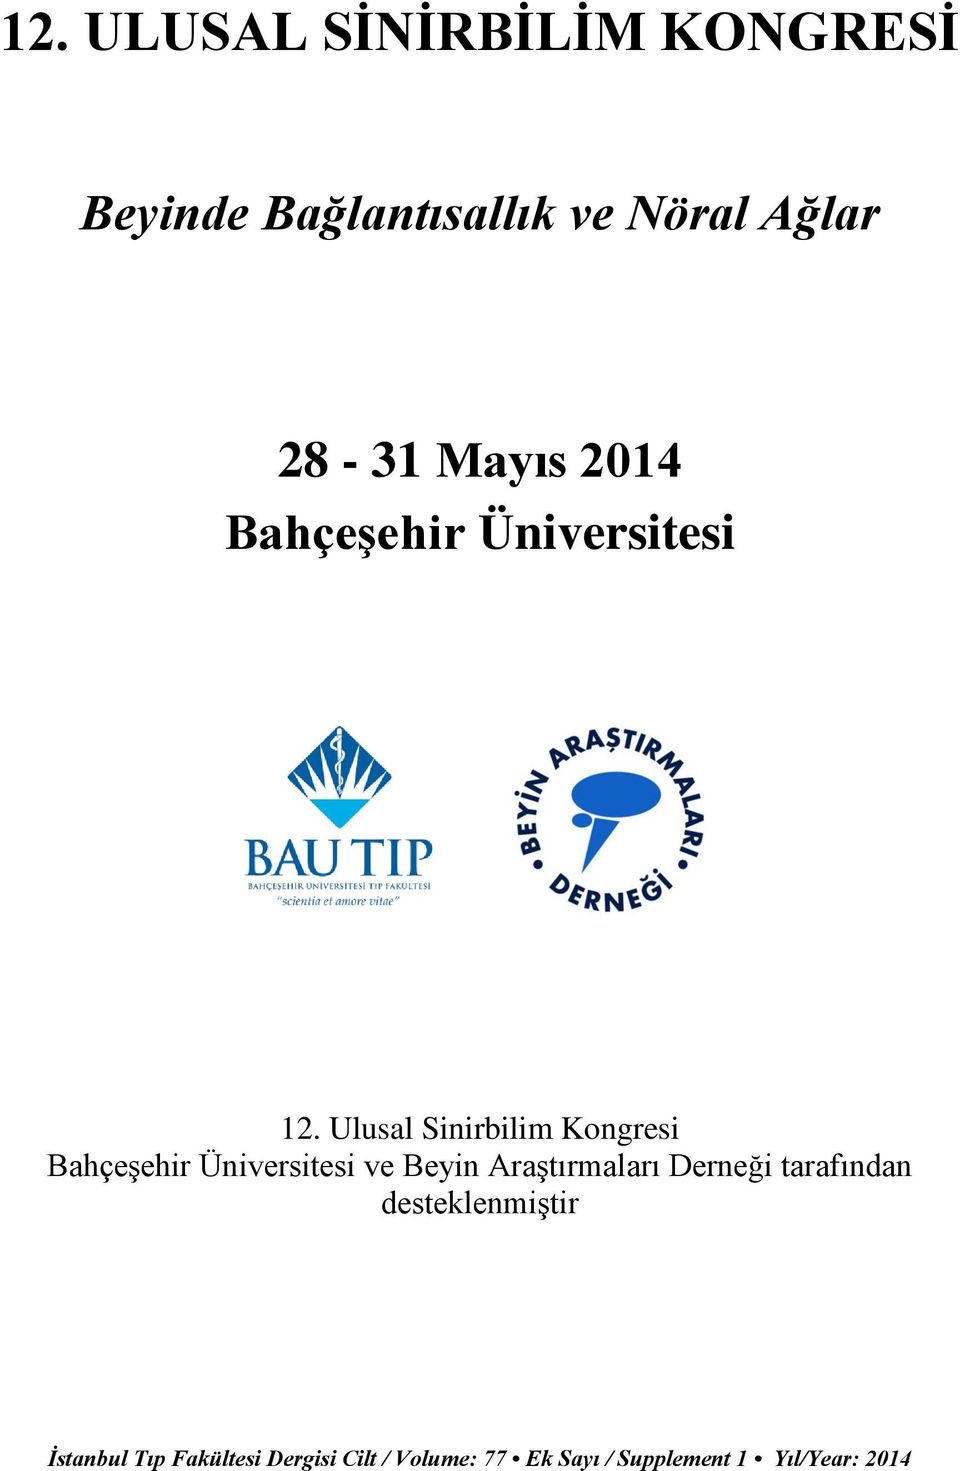 12. Ulusal Sinirbilim Kongresi Bahçeşehir Üniversitesi